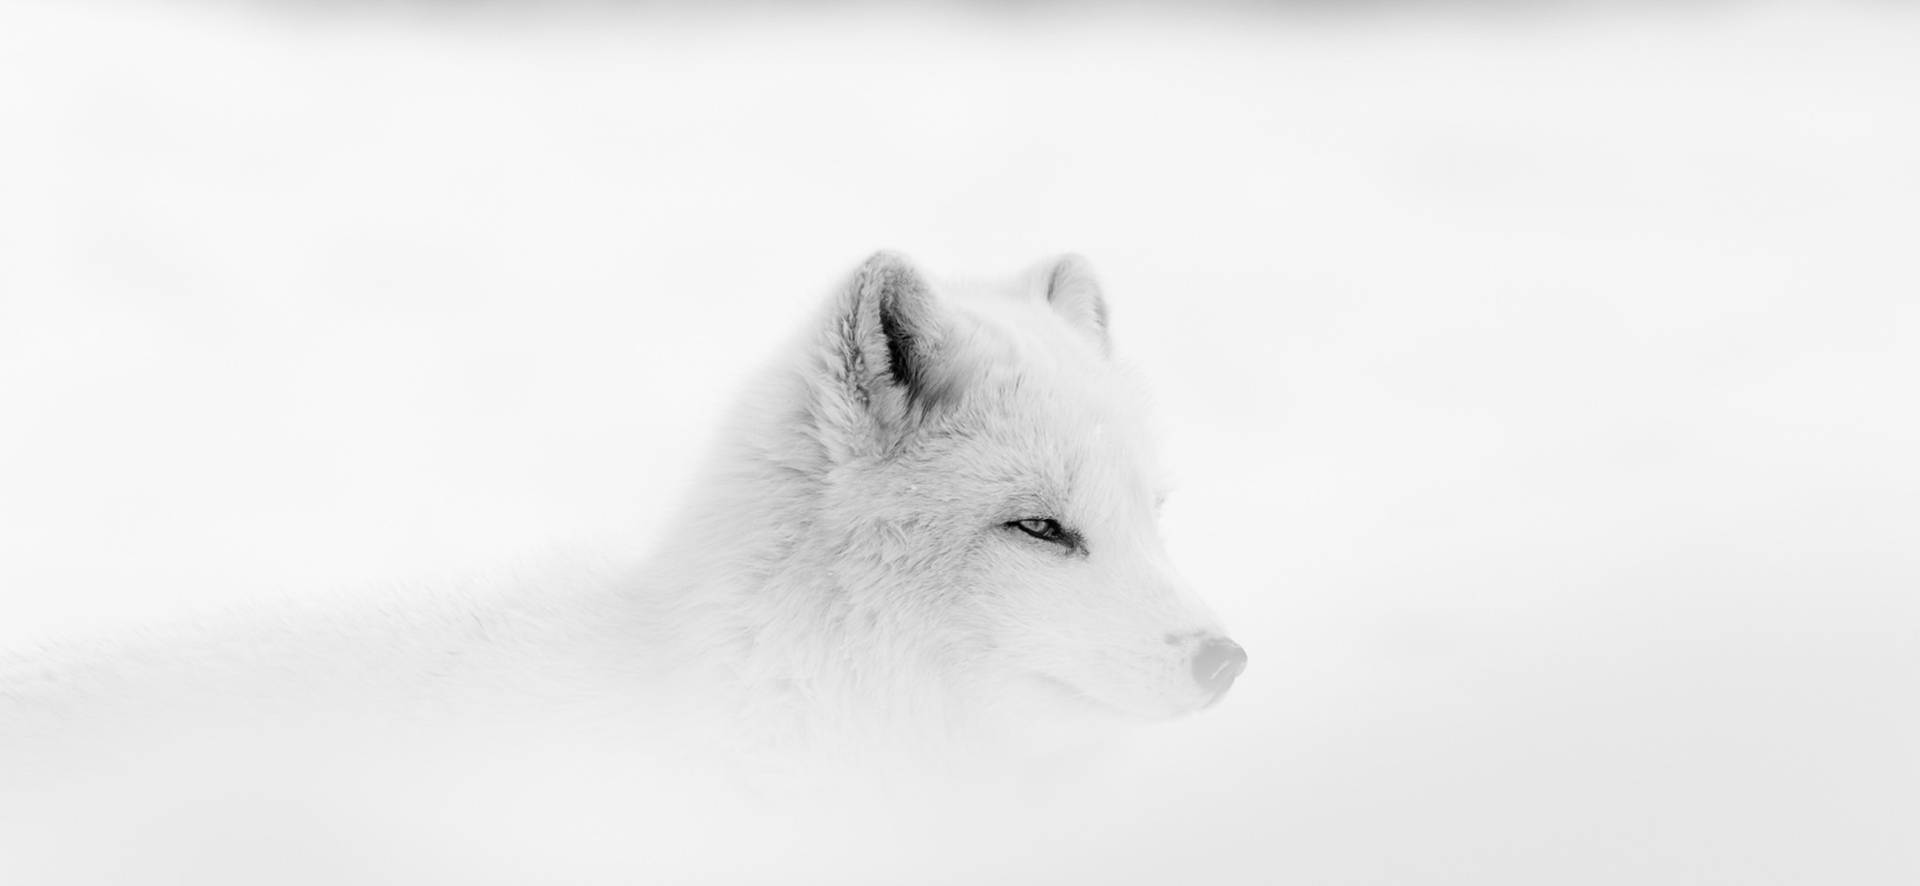 White Fox In Mist Background